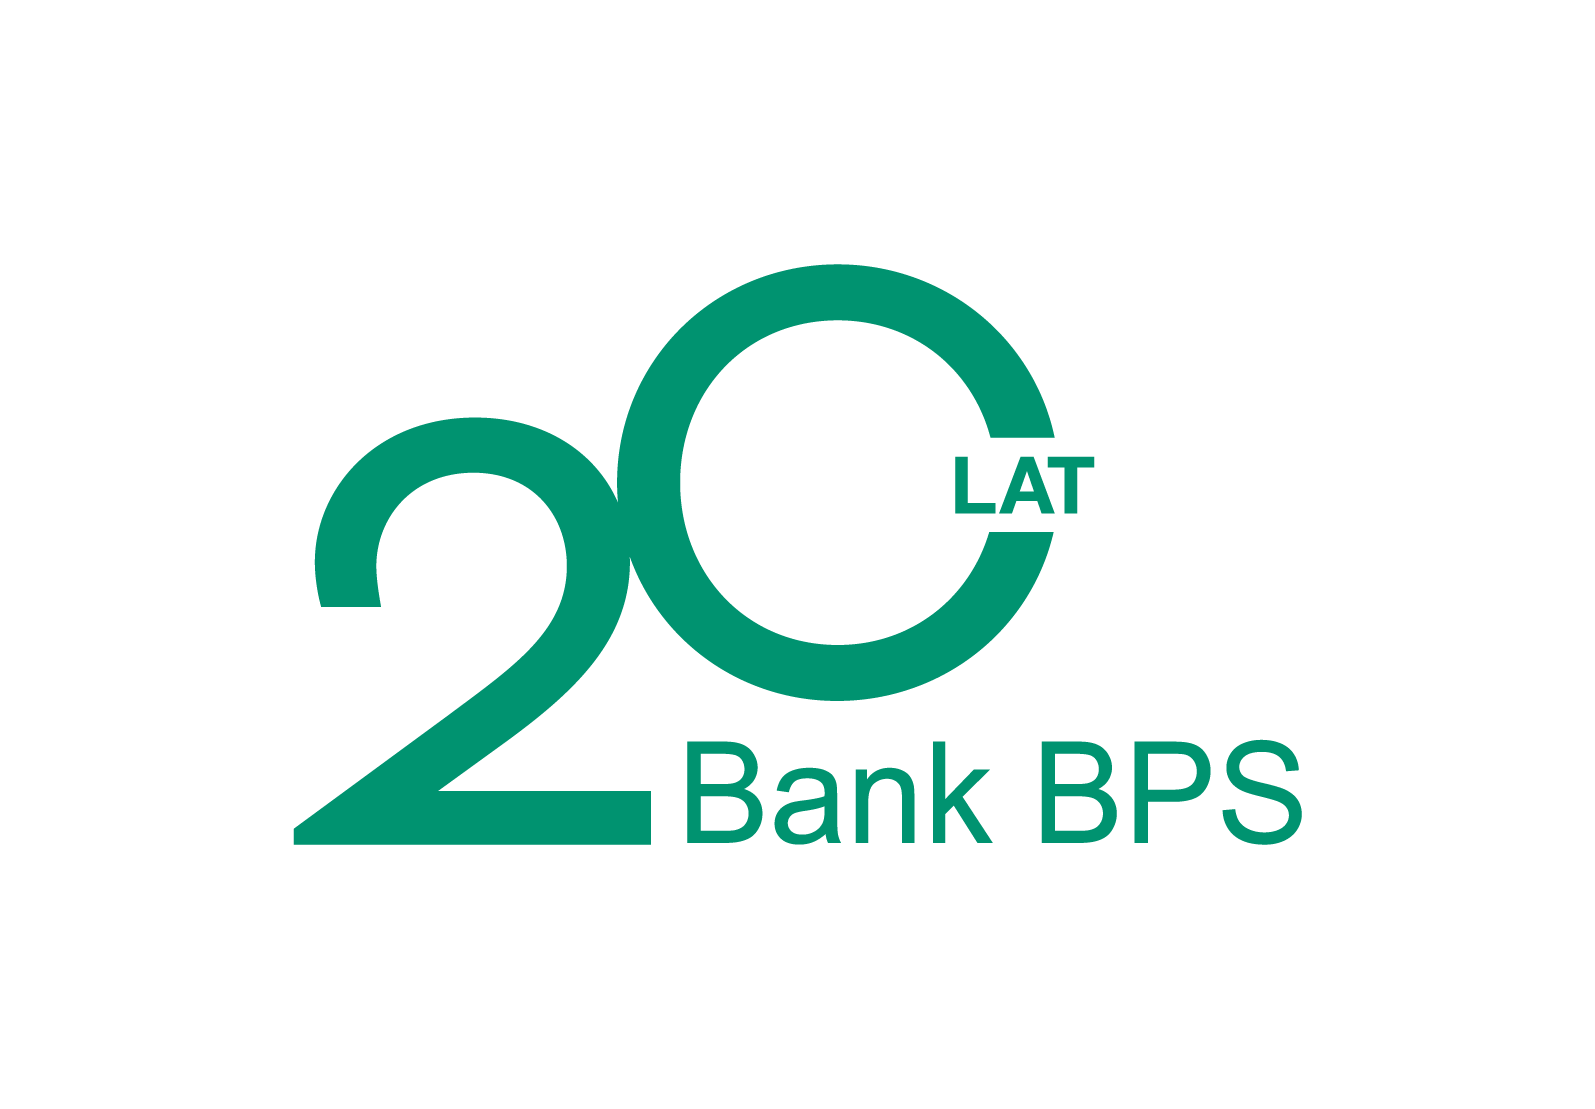 20lat Banku PBS LOGO rgb zielone bez tła